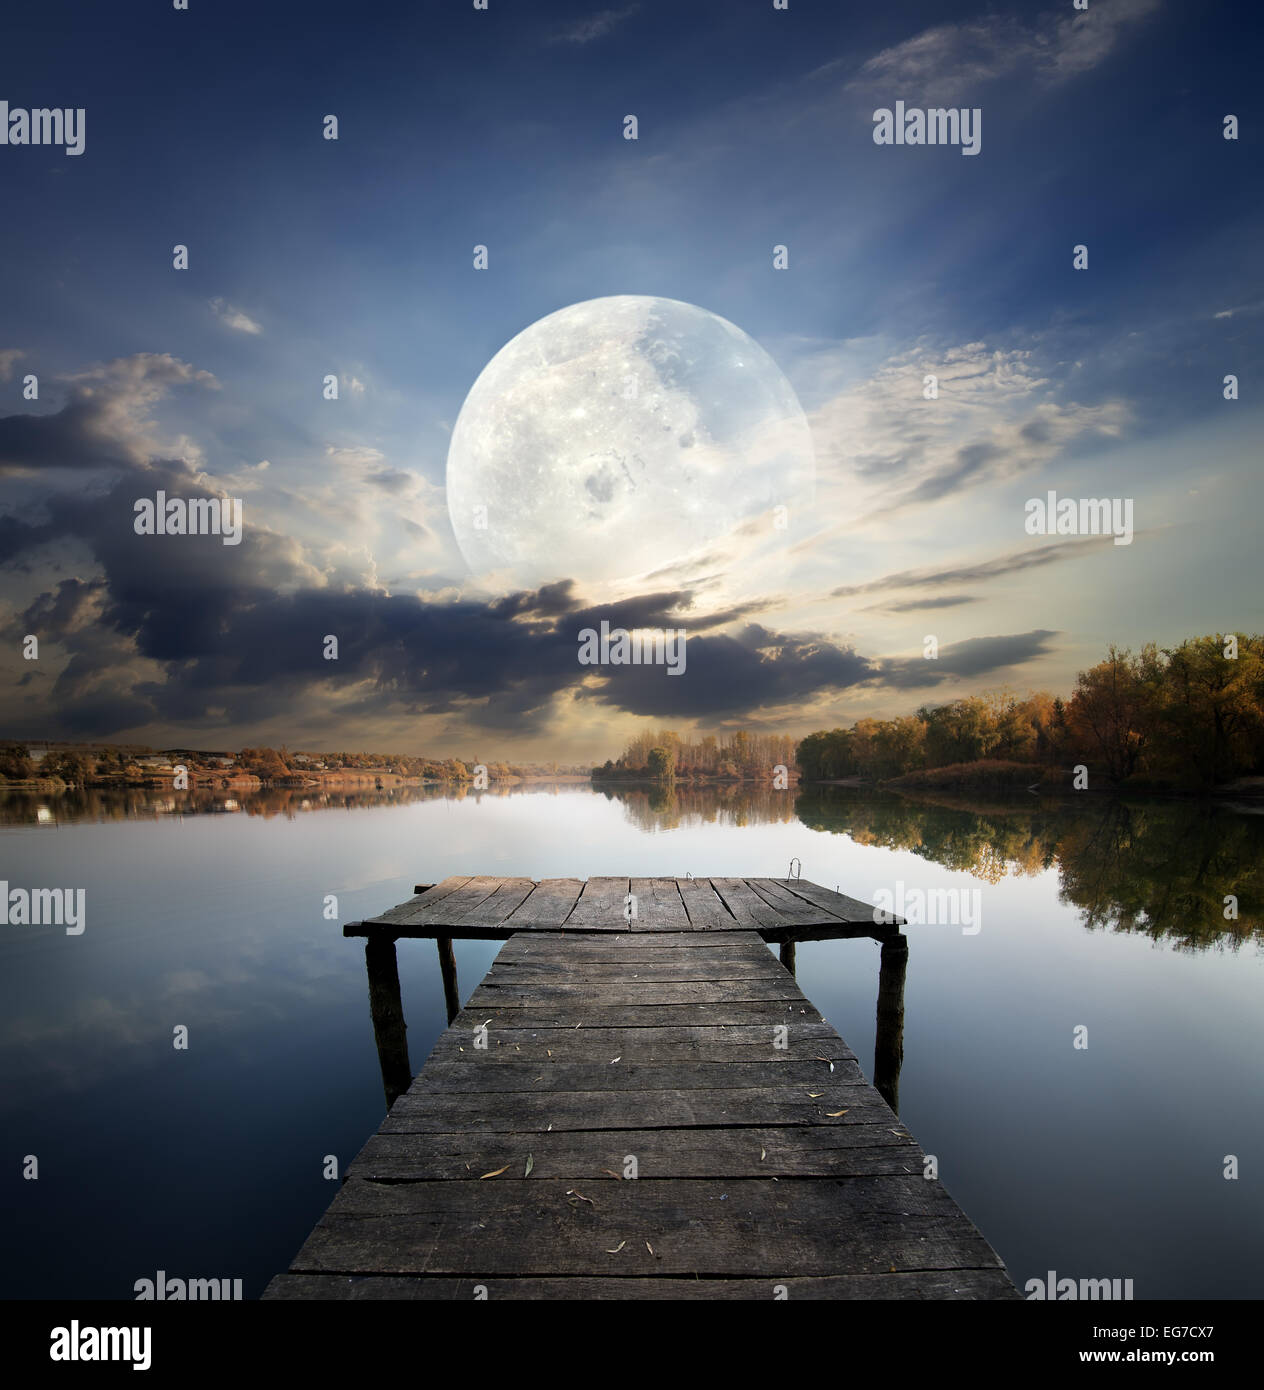 La jetée de pêche sur une rivière en vertu de fool moon. Éléments de cette image fournie par la NASA Banque D'Images